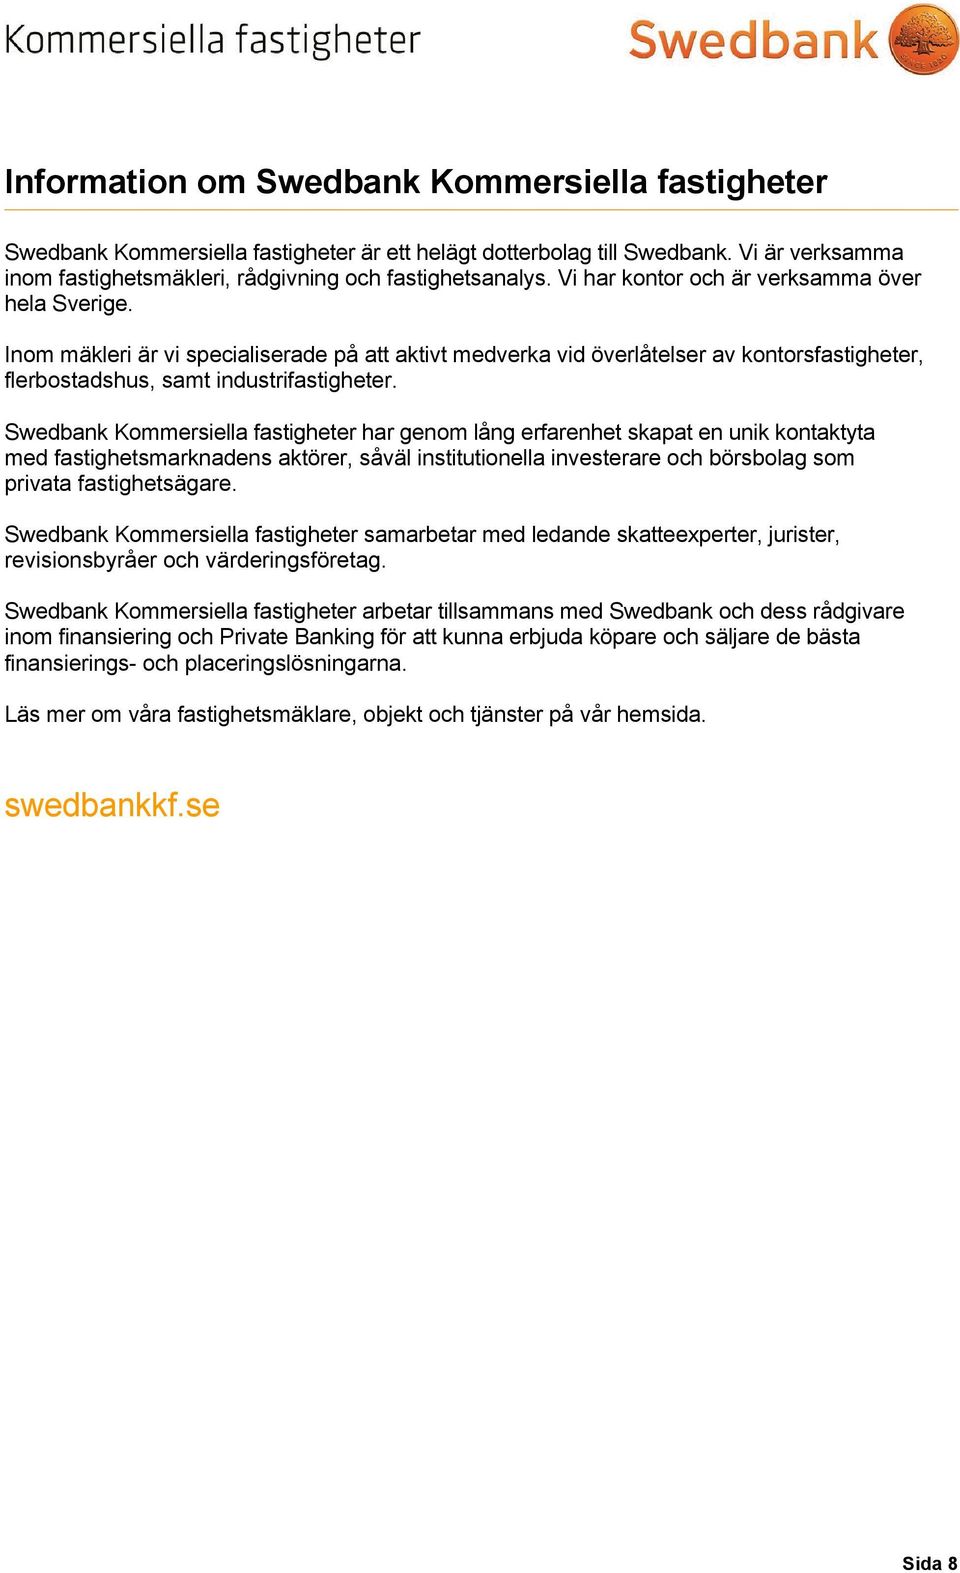 Swedbank Kommersiella fastigheter har genom lång erfarenhet skapat en unik kontaktyta med fastighetsmarknadens aktörer, såväl institutionella investerare och börsbolag som privata fastighetsägare.